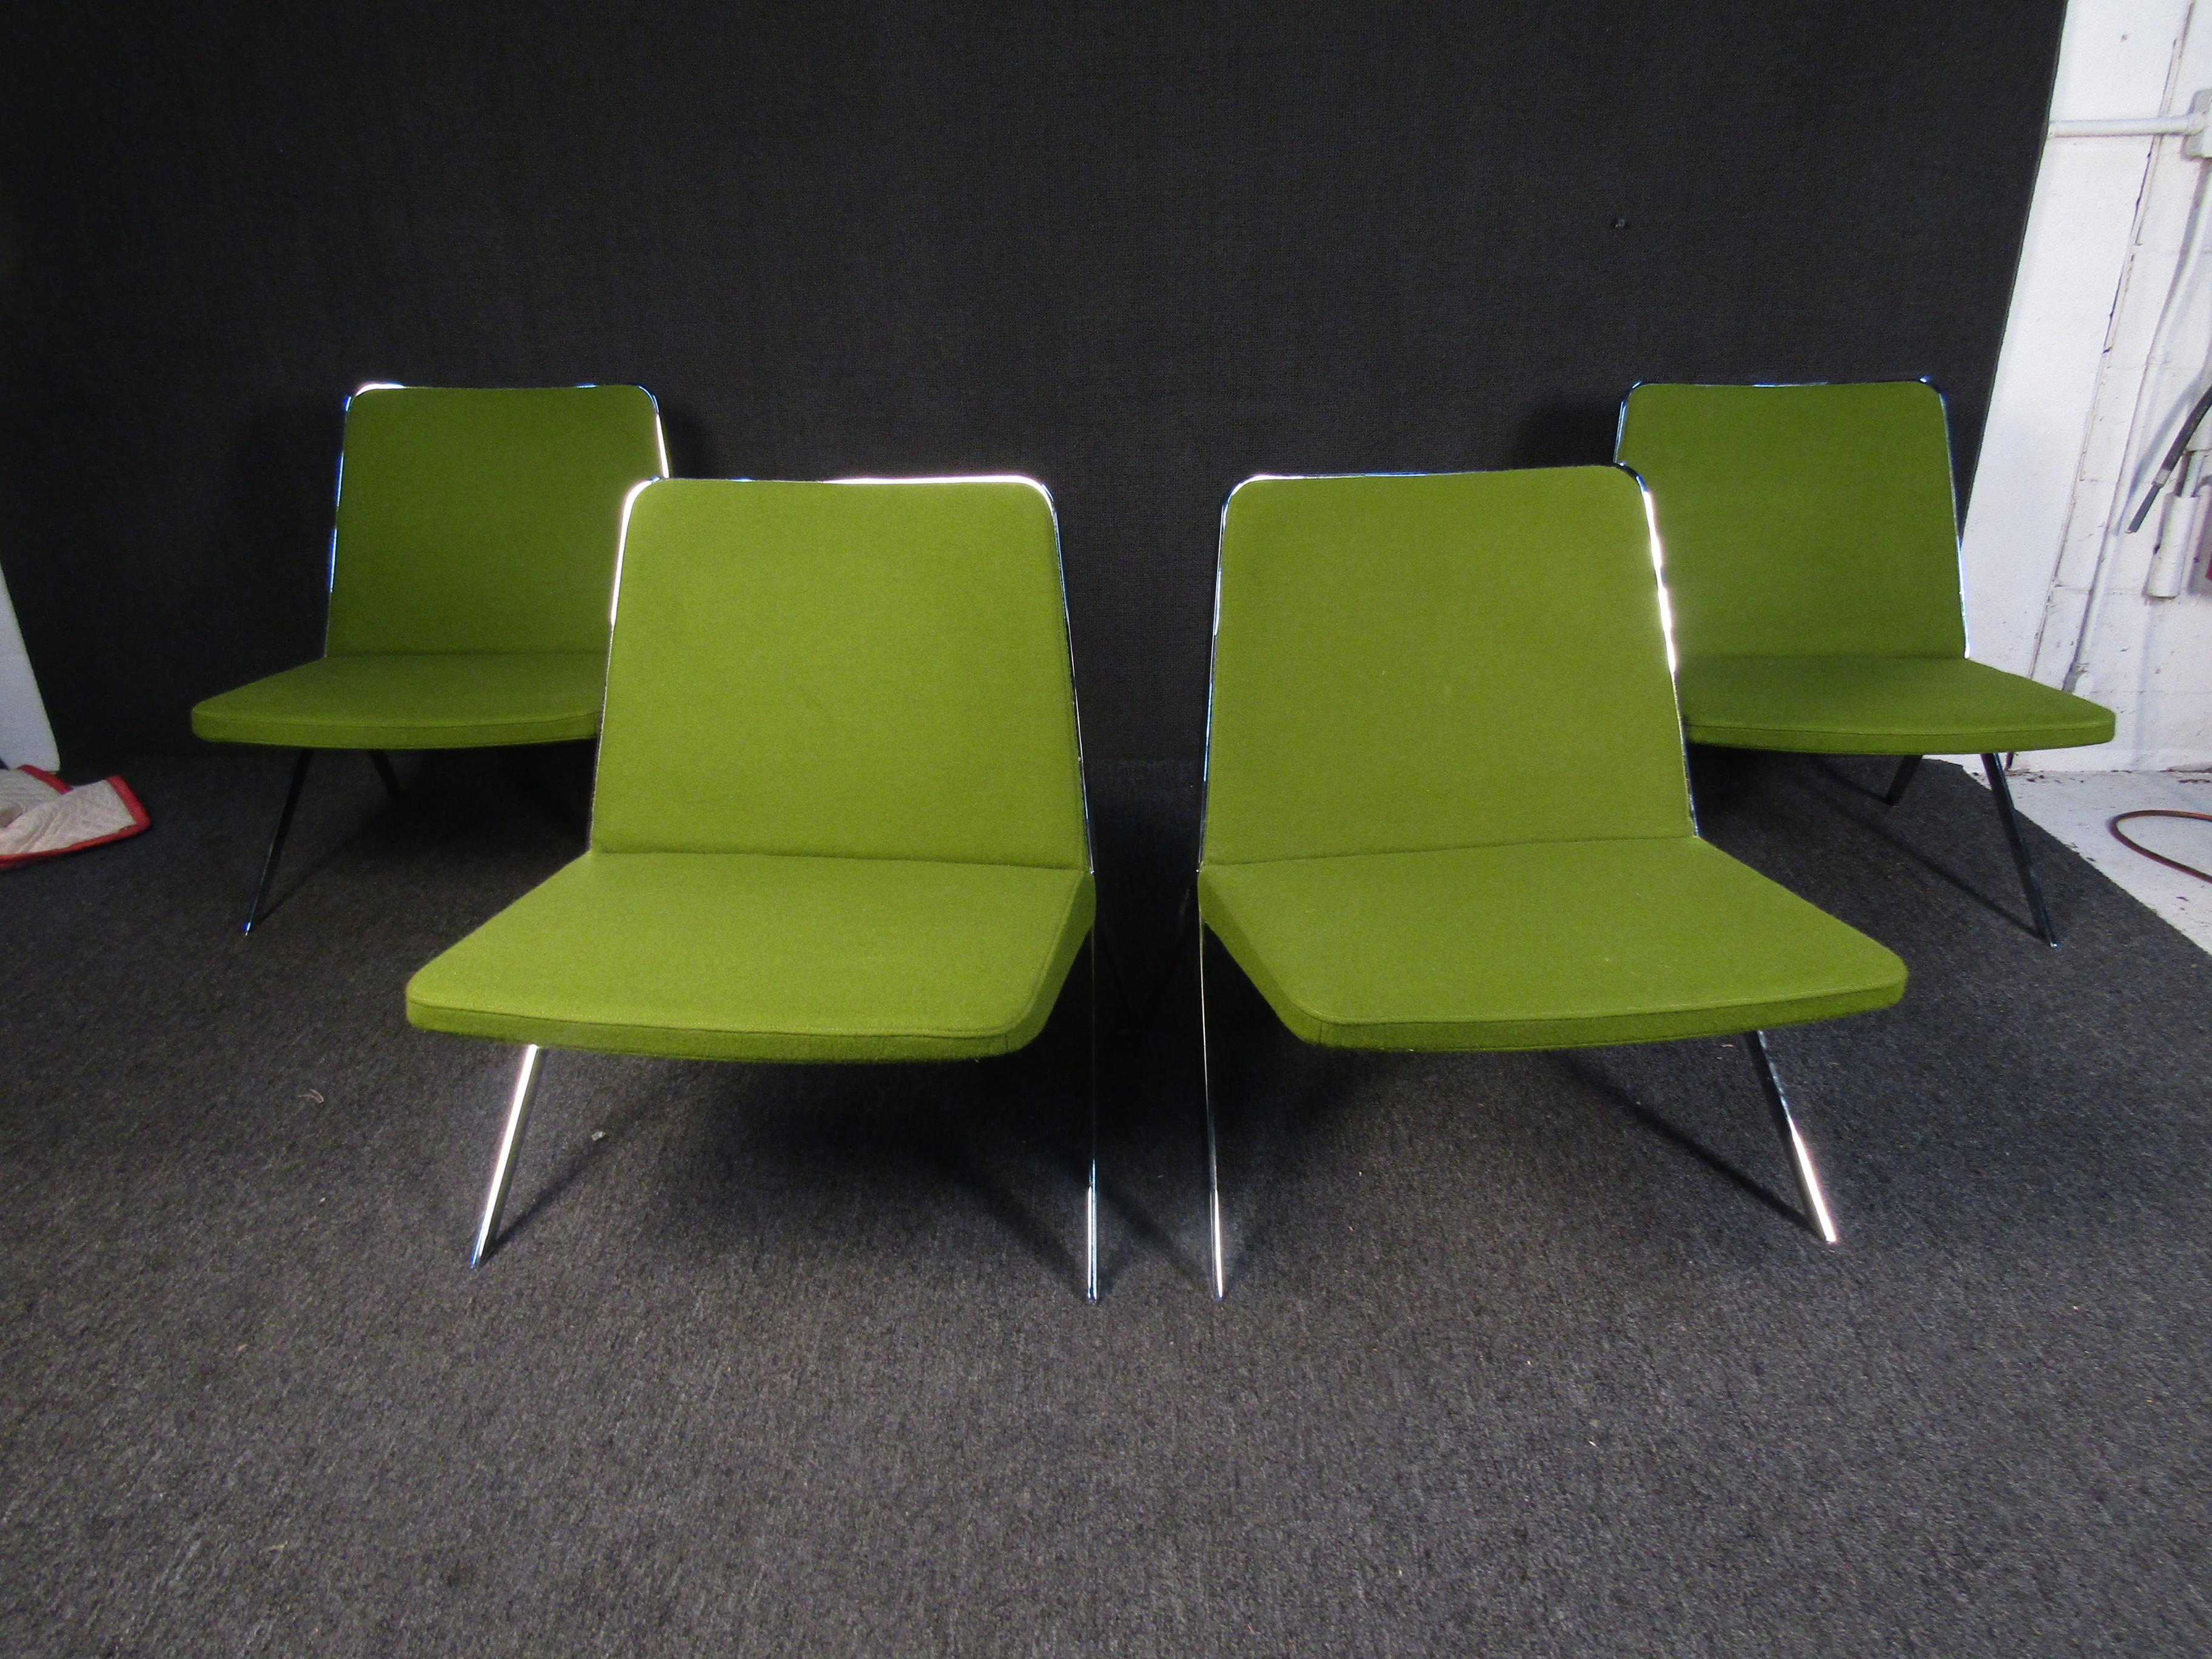 Ces chaises de bureau de style Mid-Century Modern sont dotées d'un tissu vert et d'une base en métal. Ces chaises sont parfaites pour ajouter une touche vintage à un bureau ou à un espace de détente. 

 Veuillez confirmer la localisation de